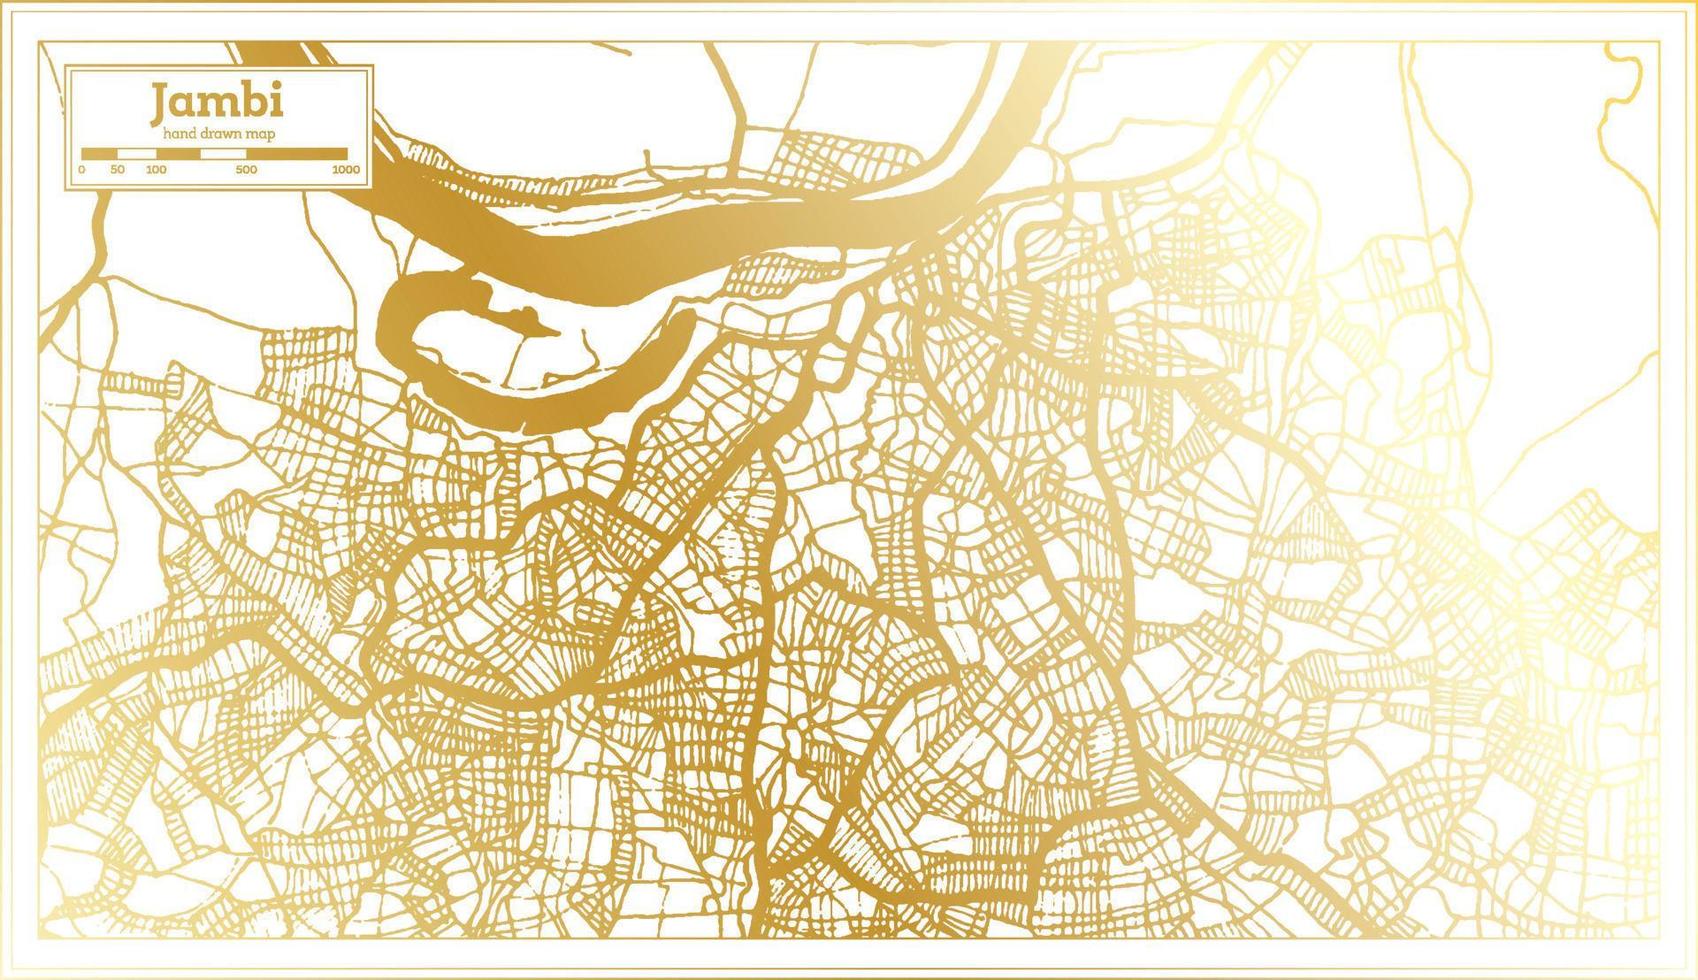 mapa da cidade de jambi indonésia em estilo retrô na cor dourada. mapa de contorno. vetor